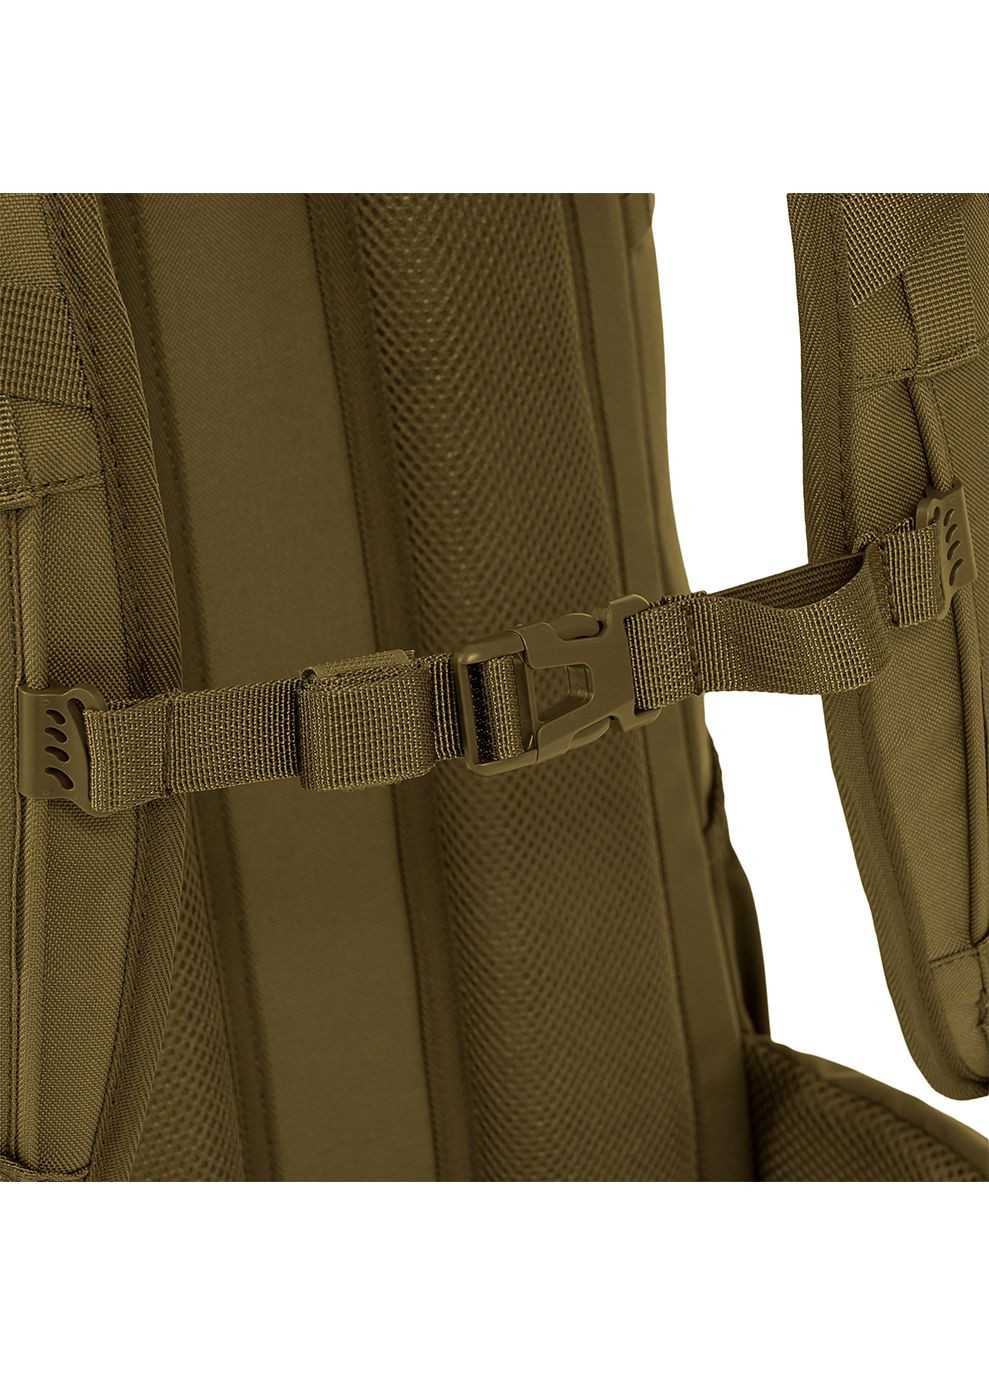 Рюкзак тактический Eagle 2 Backpack 30L Coyote Tan Highlander (268832587)